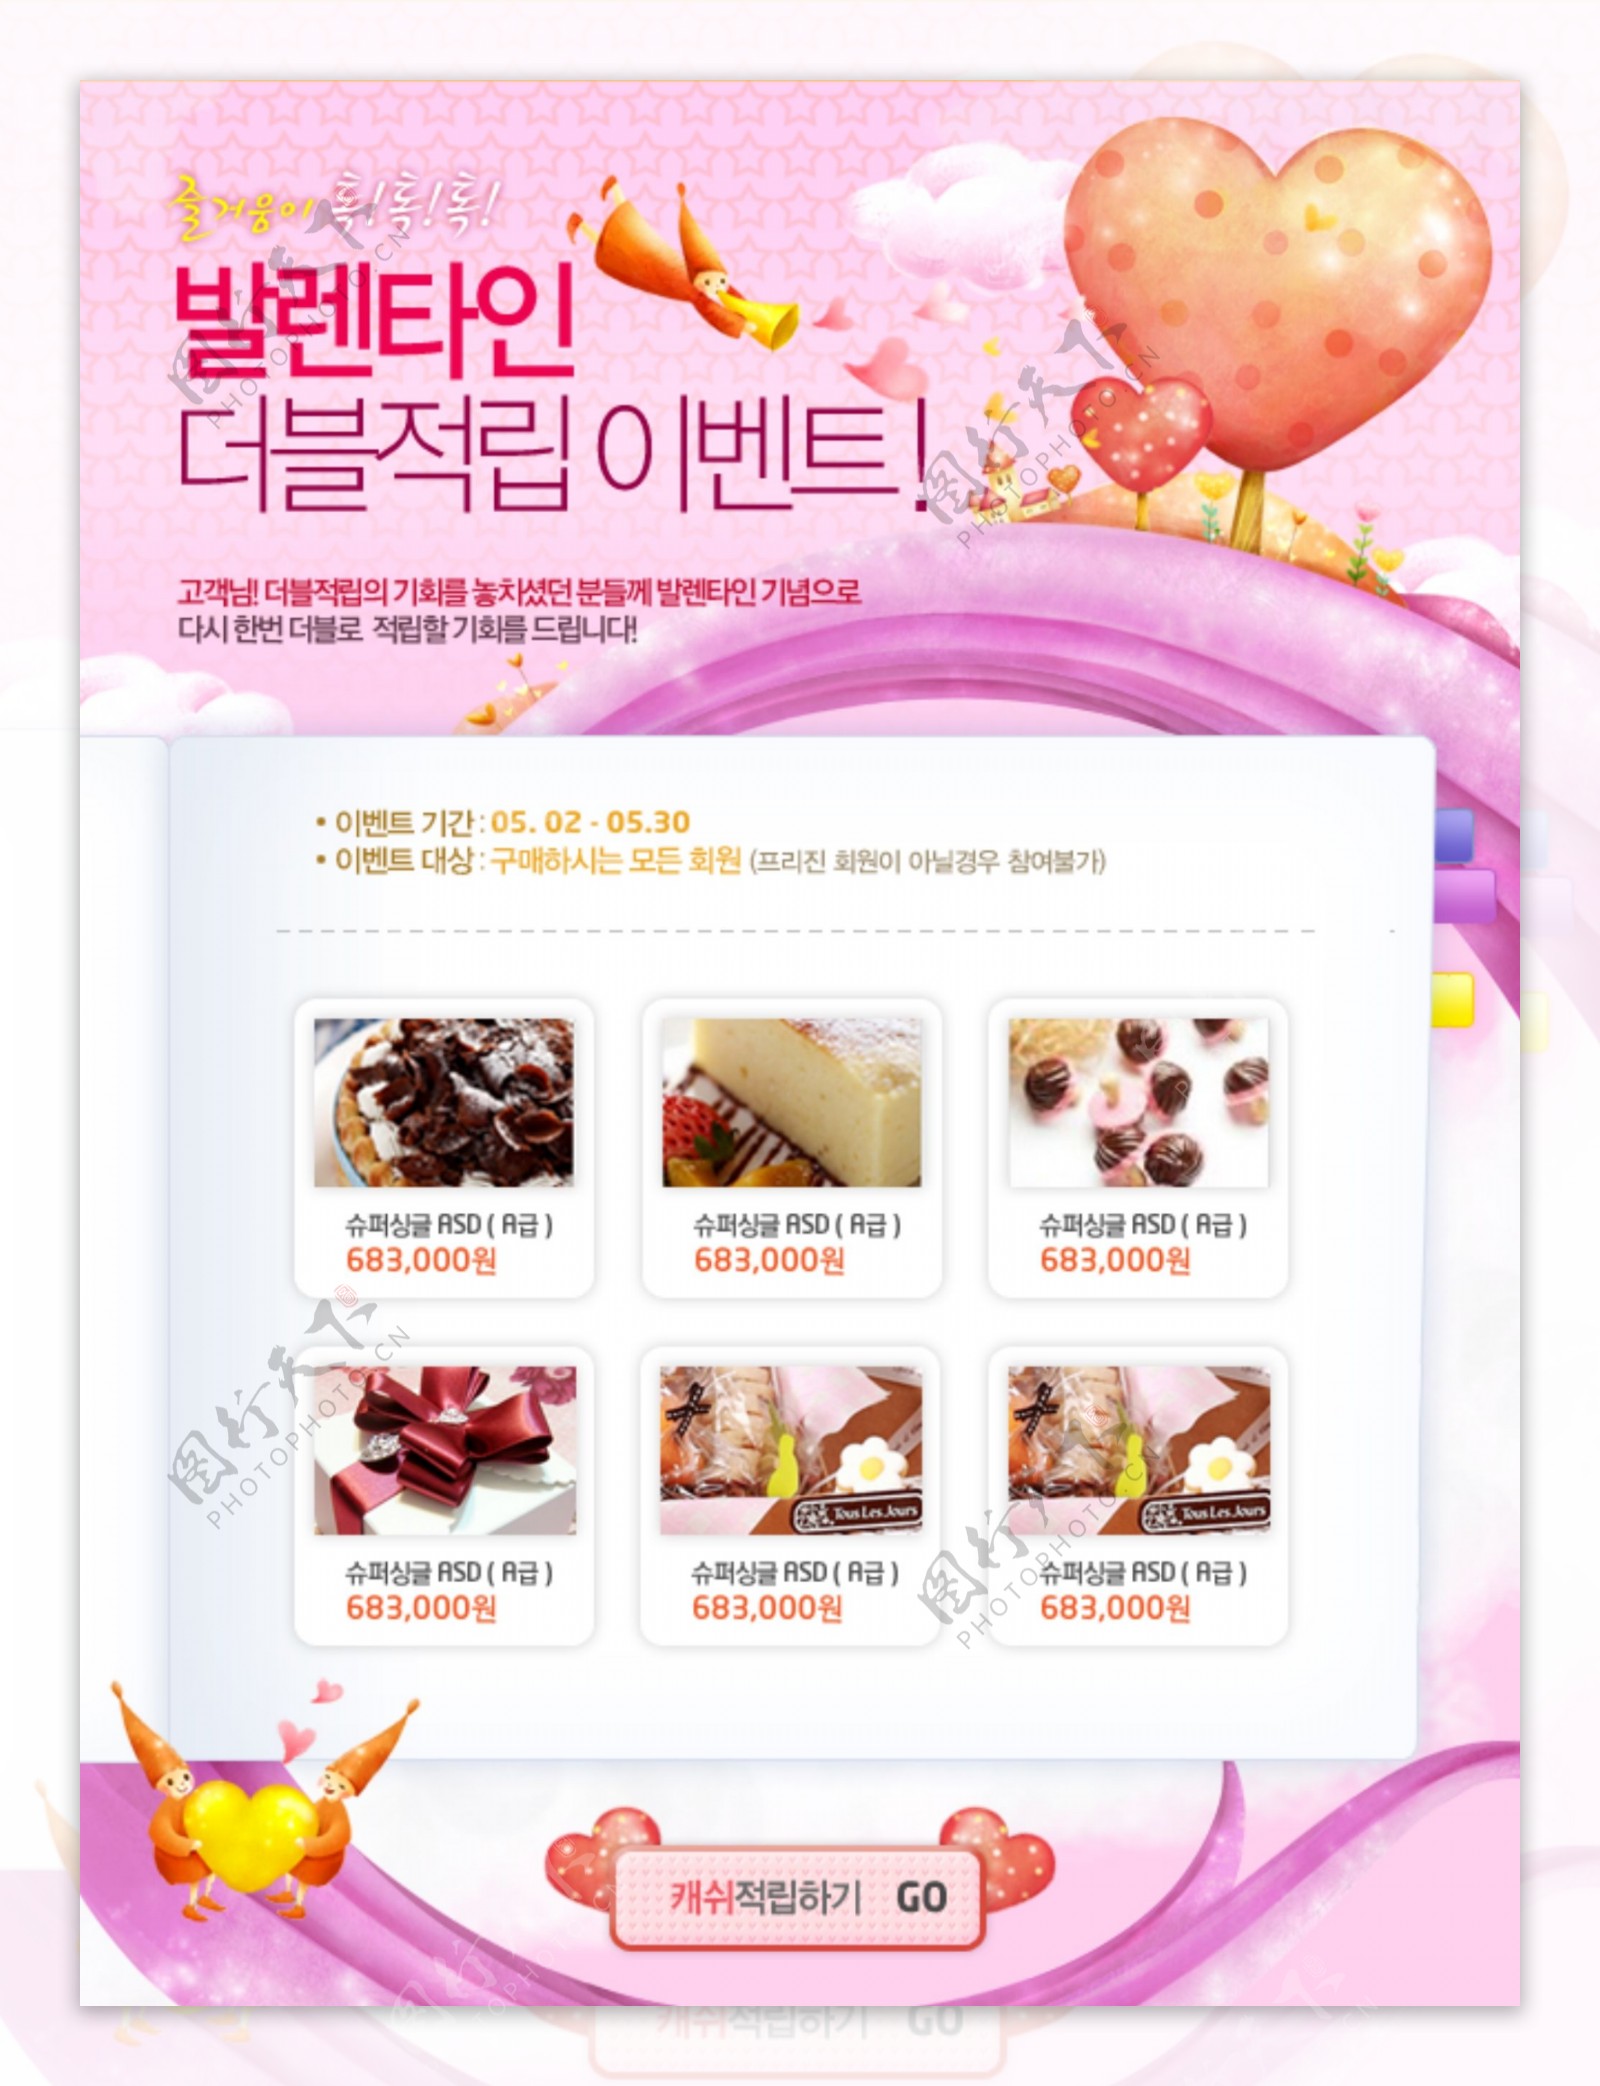 韩国情人节食品网页模板PSD素材